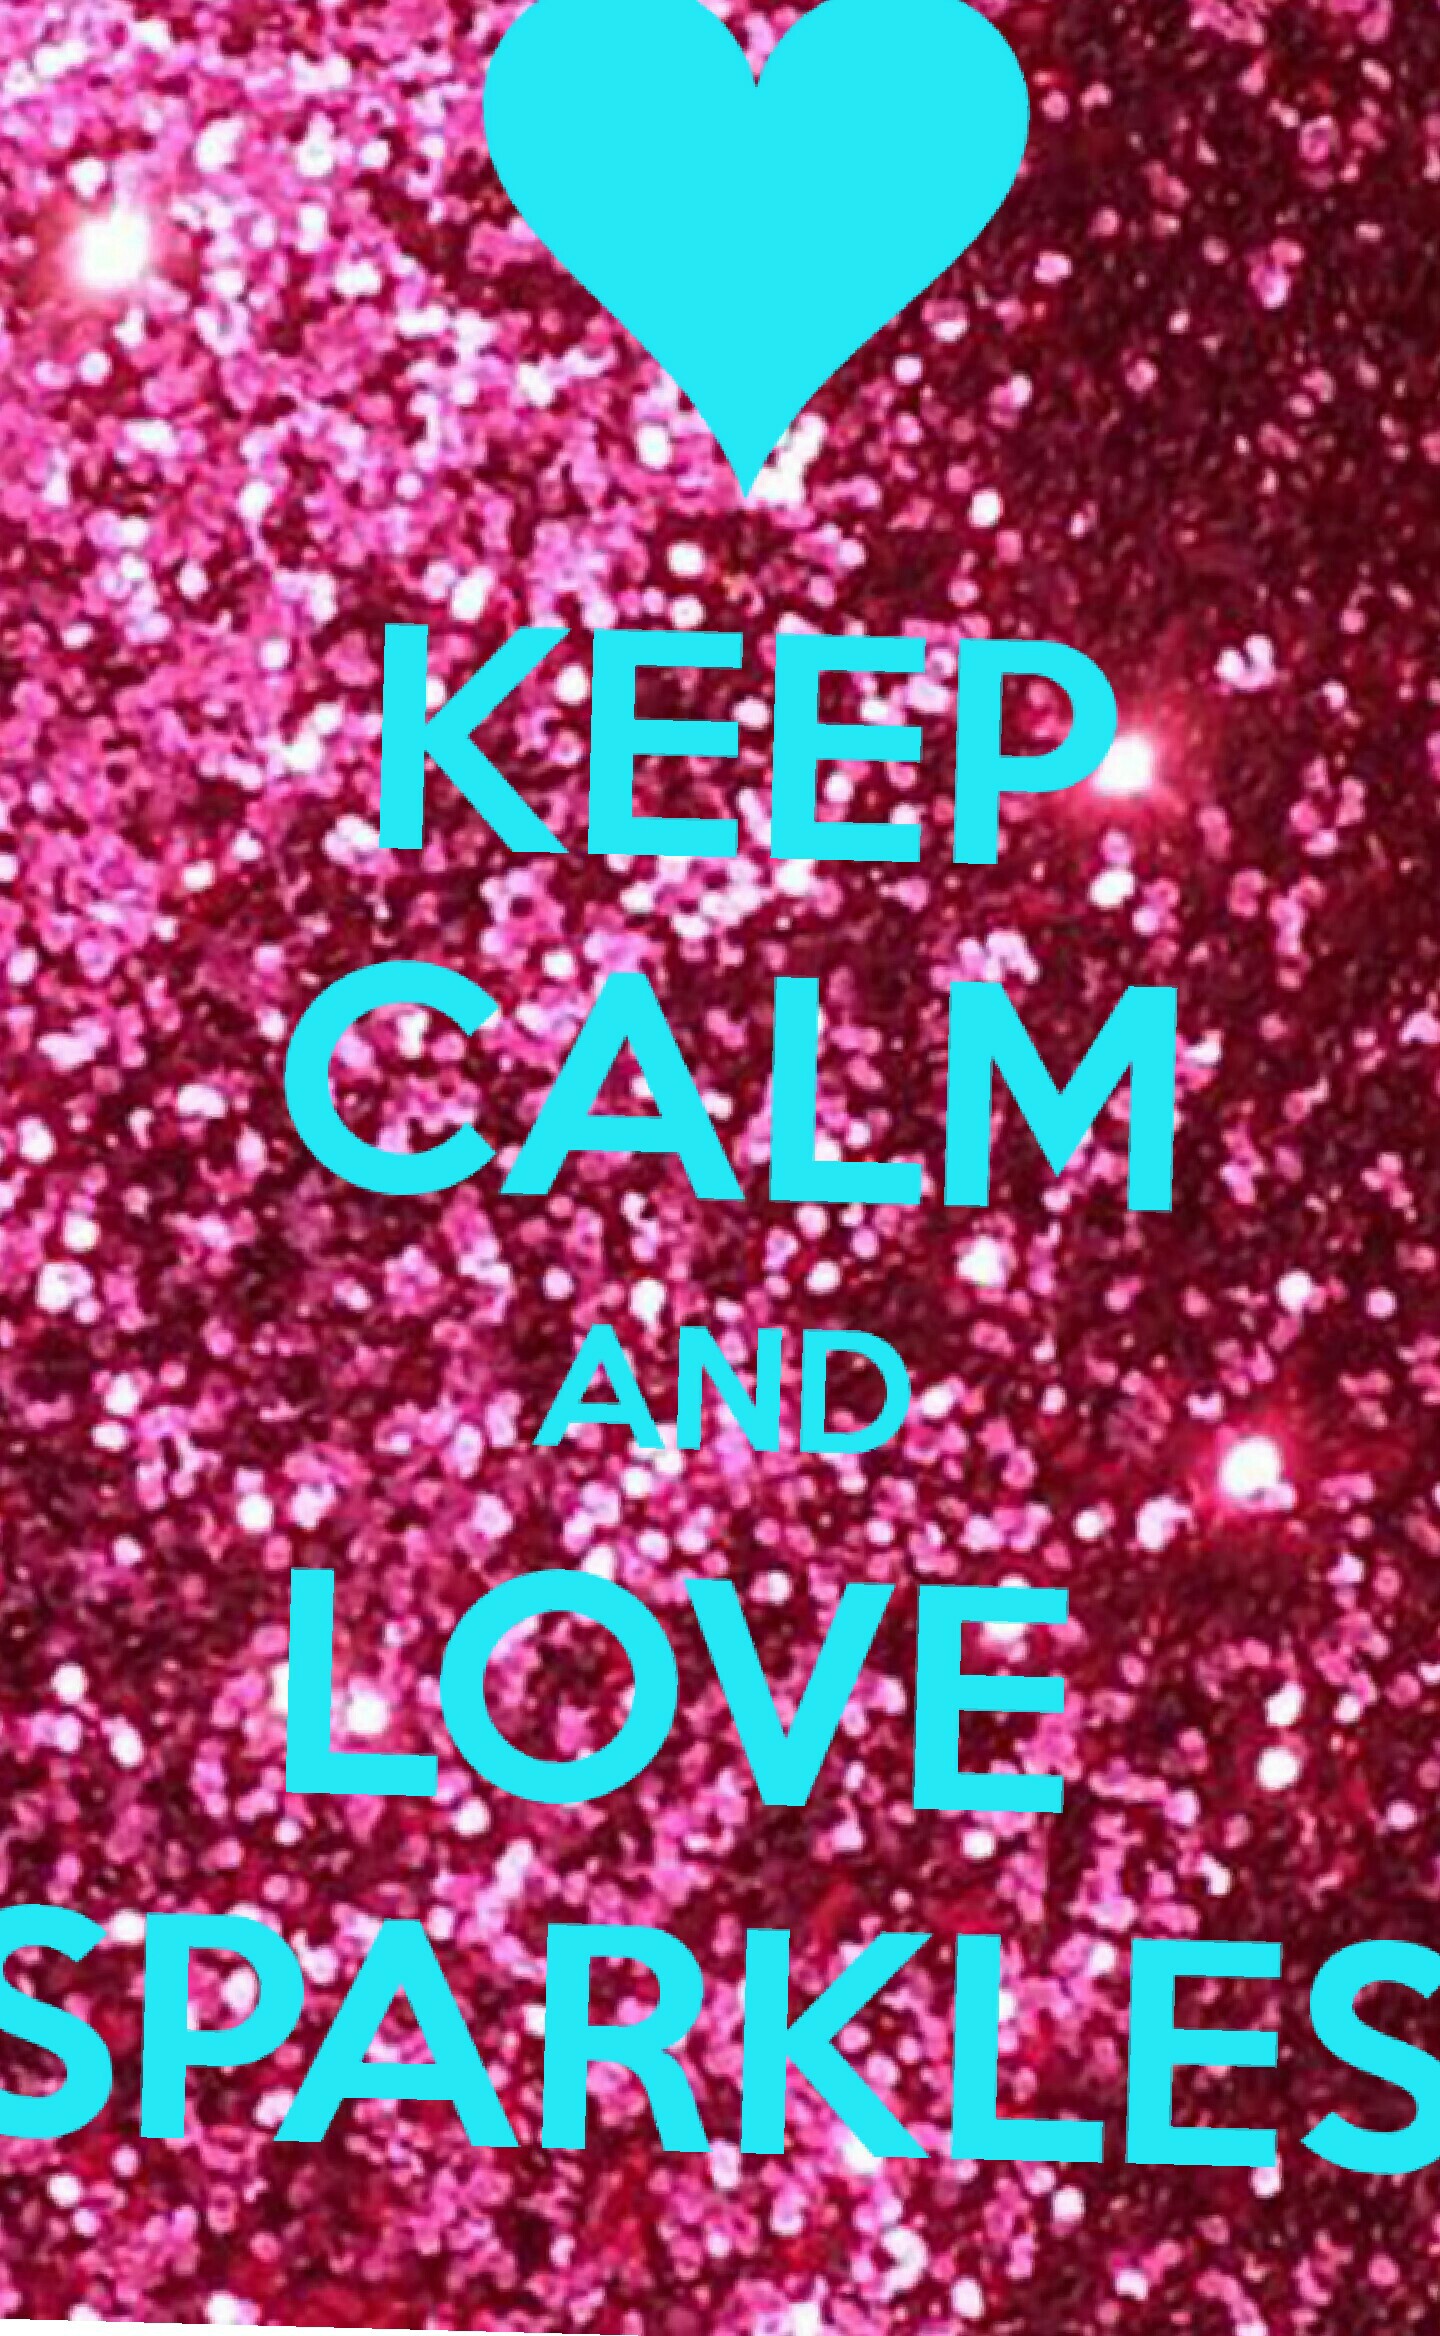 keep calm and love sparkles
♡♡♡♡♡
